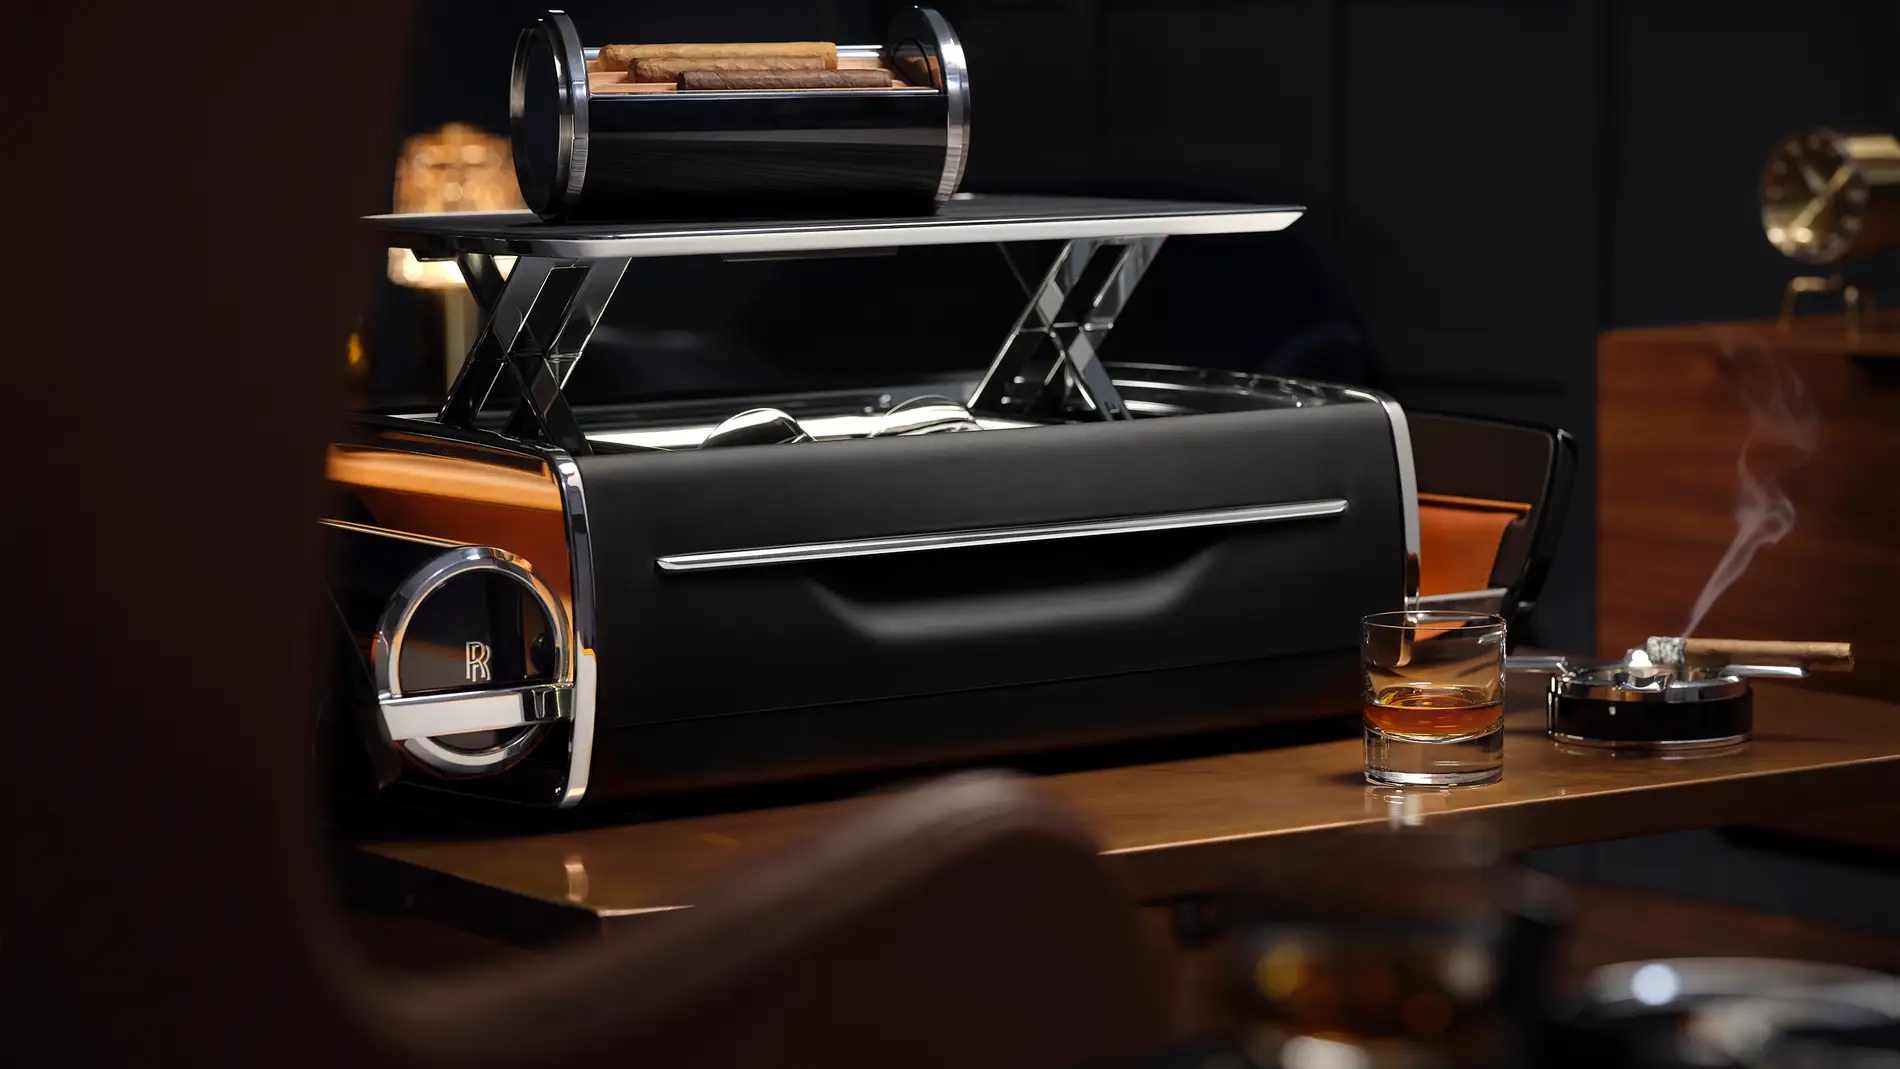 La bodega de Rolls-Royce: una boca de Whisky y cigarro a medida